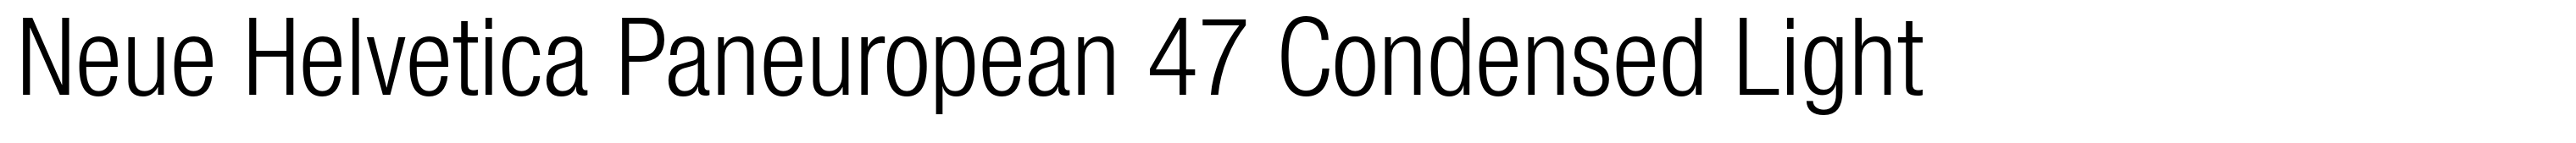 Neue Helvetica Paneuropean 47 Condensed Light